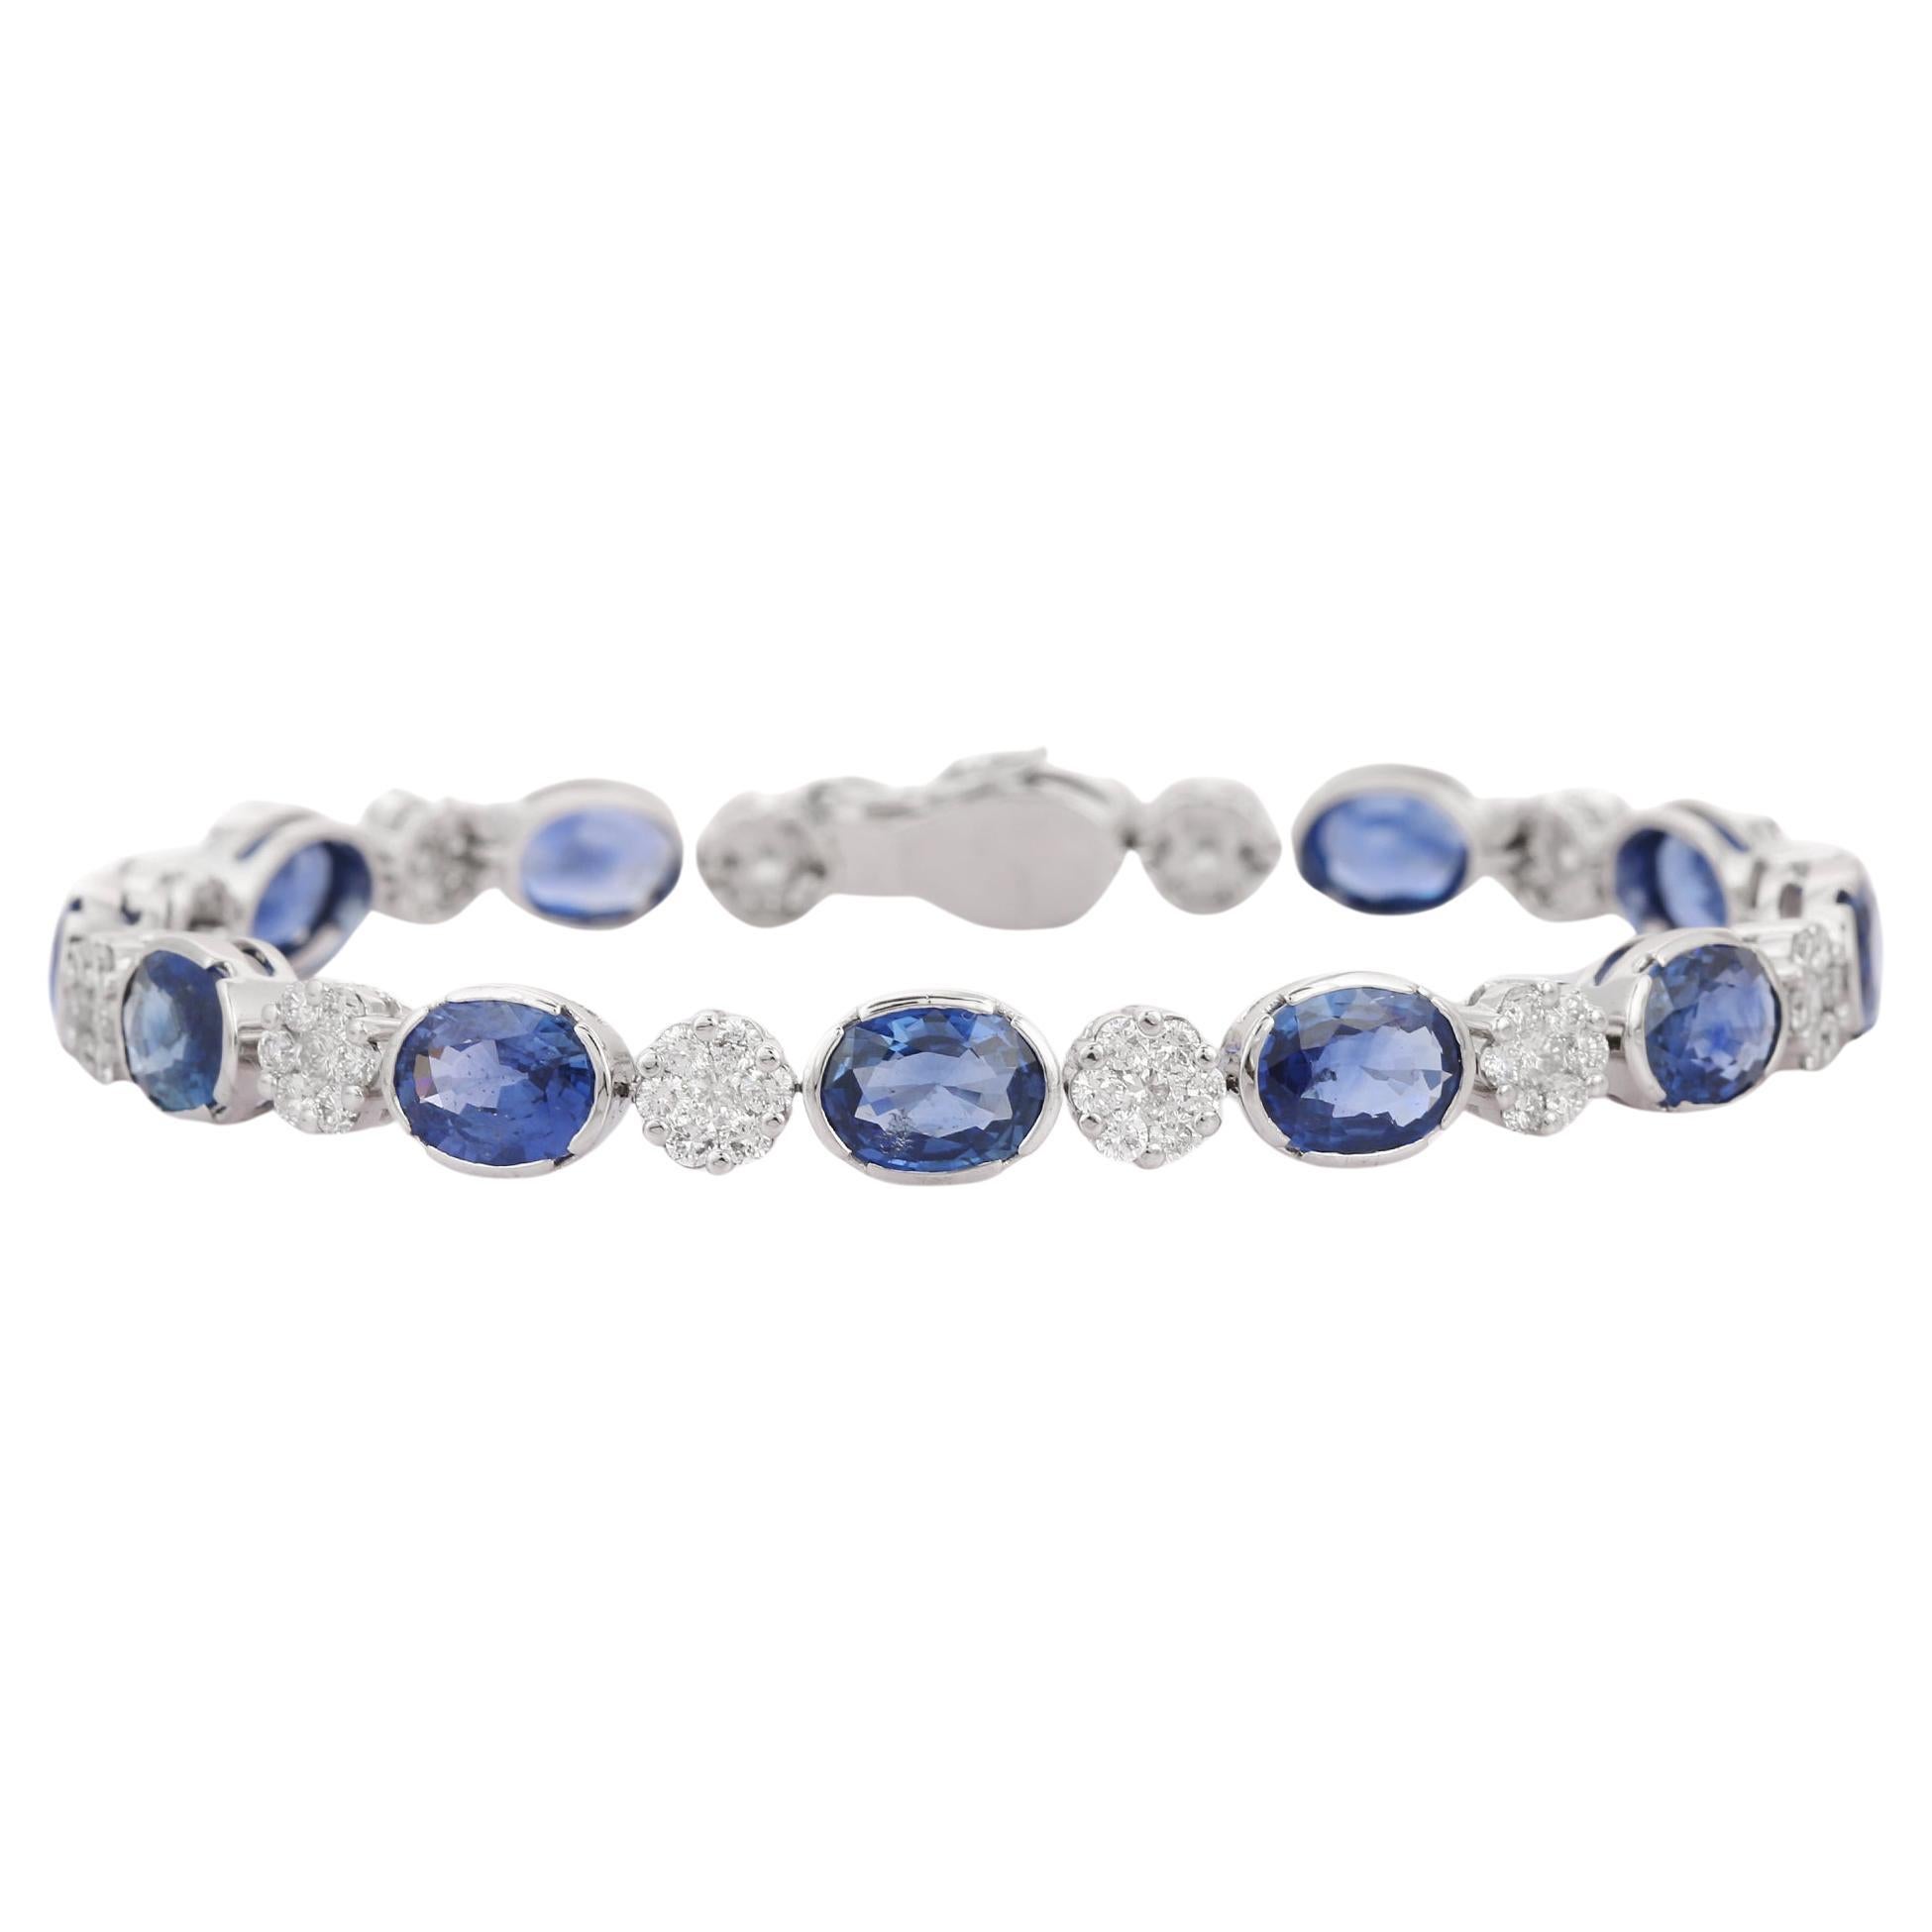 Antique Blue Sapphires and Diamonds Tennis Bracelet 6 Carats 18K White ...